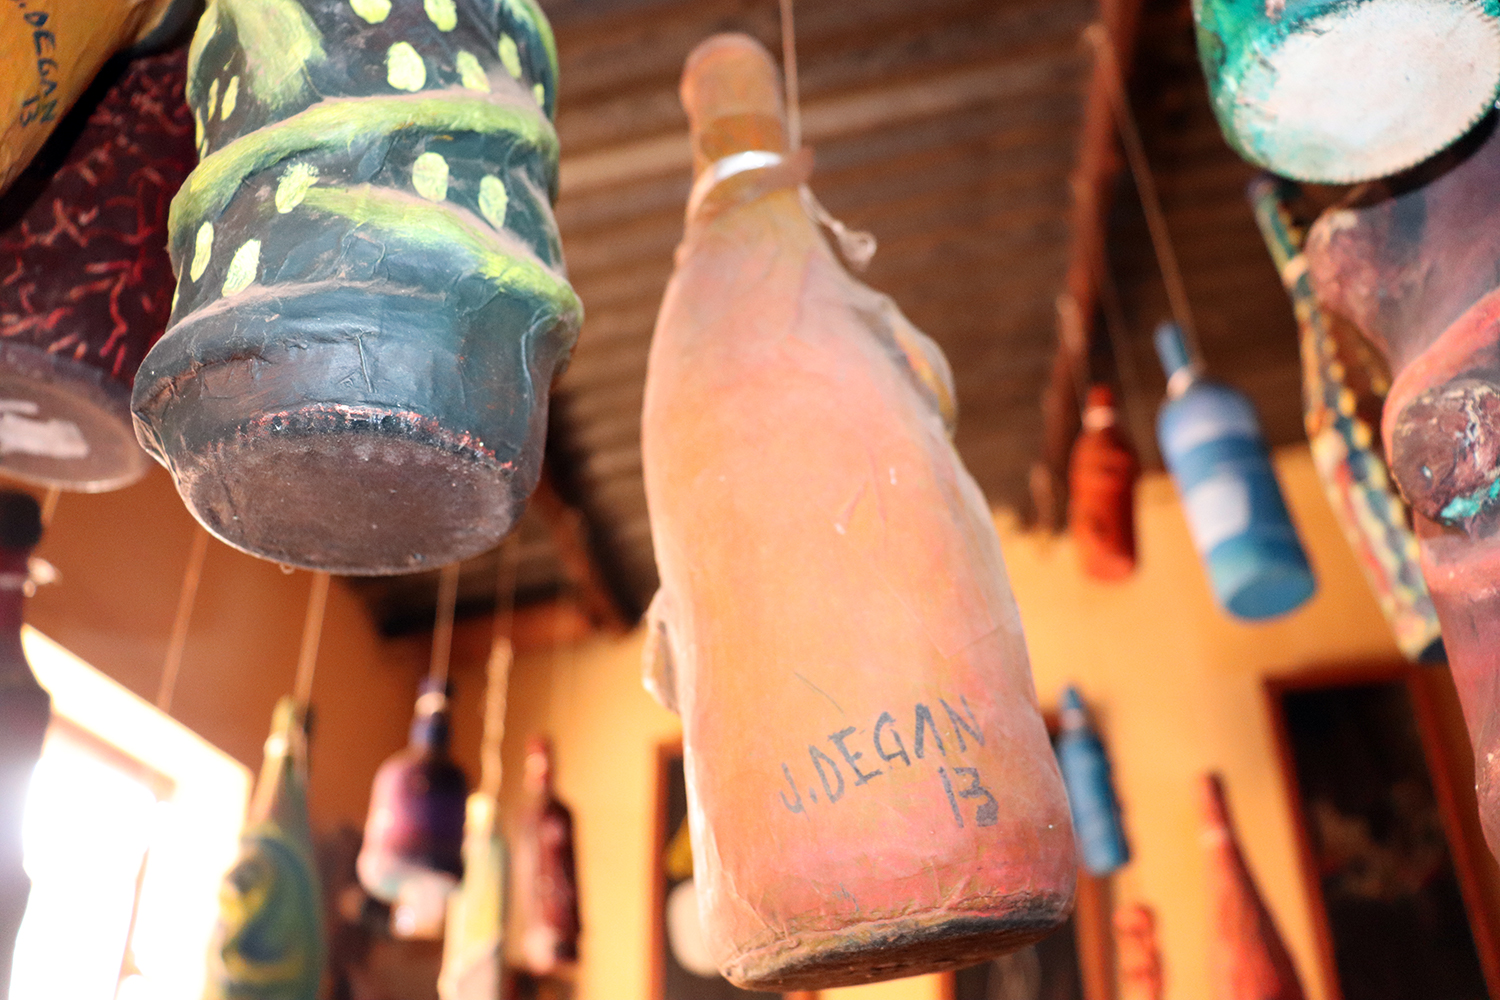 Les bouteilles servent pour les cérémonies vaudou. Julien DEGAN fait une installation de ces objets de culte. 